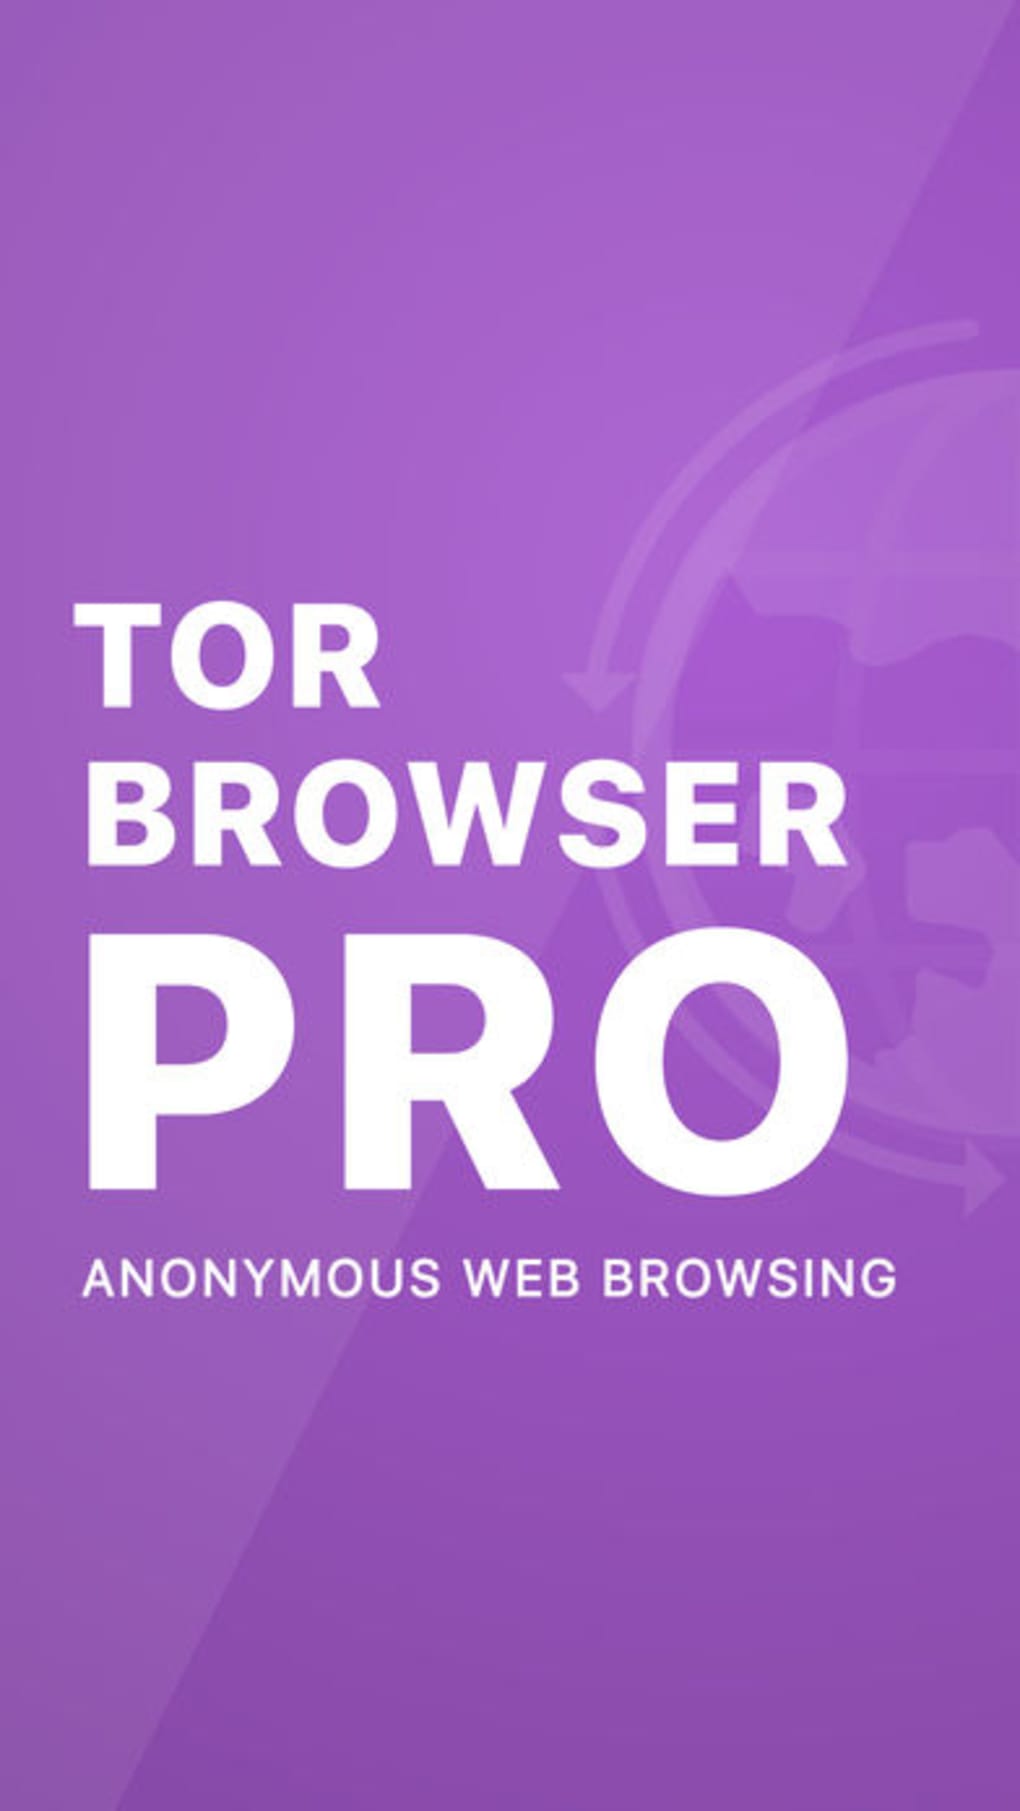 Tor browser для iphone скачать бесплатно megaruzxpnew4af установить браузер тор на андроид на русском mega